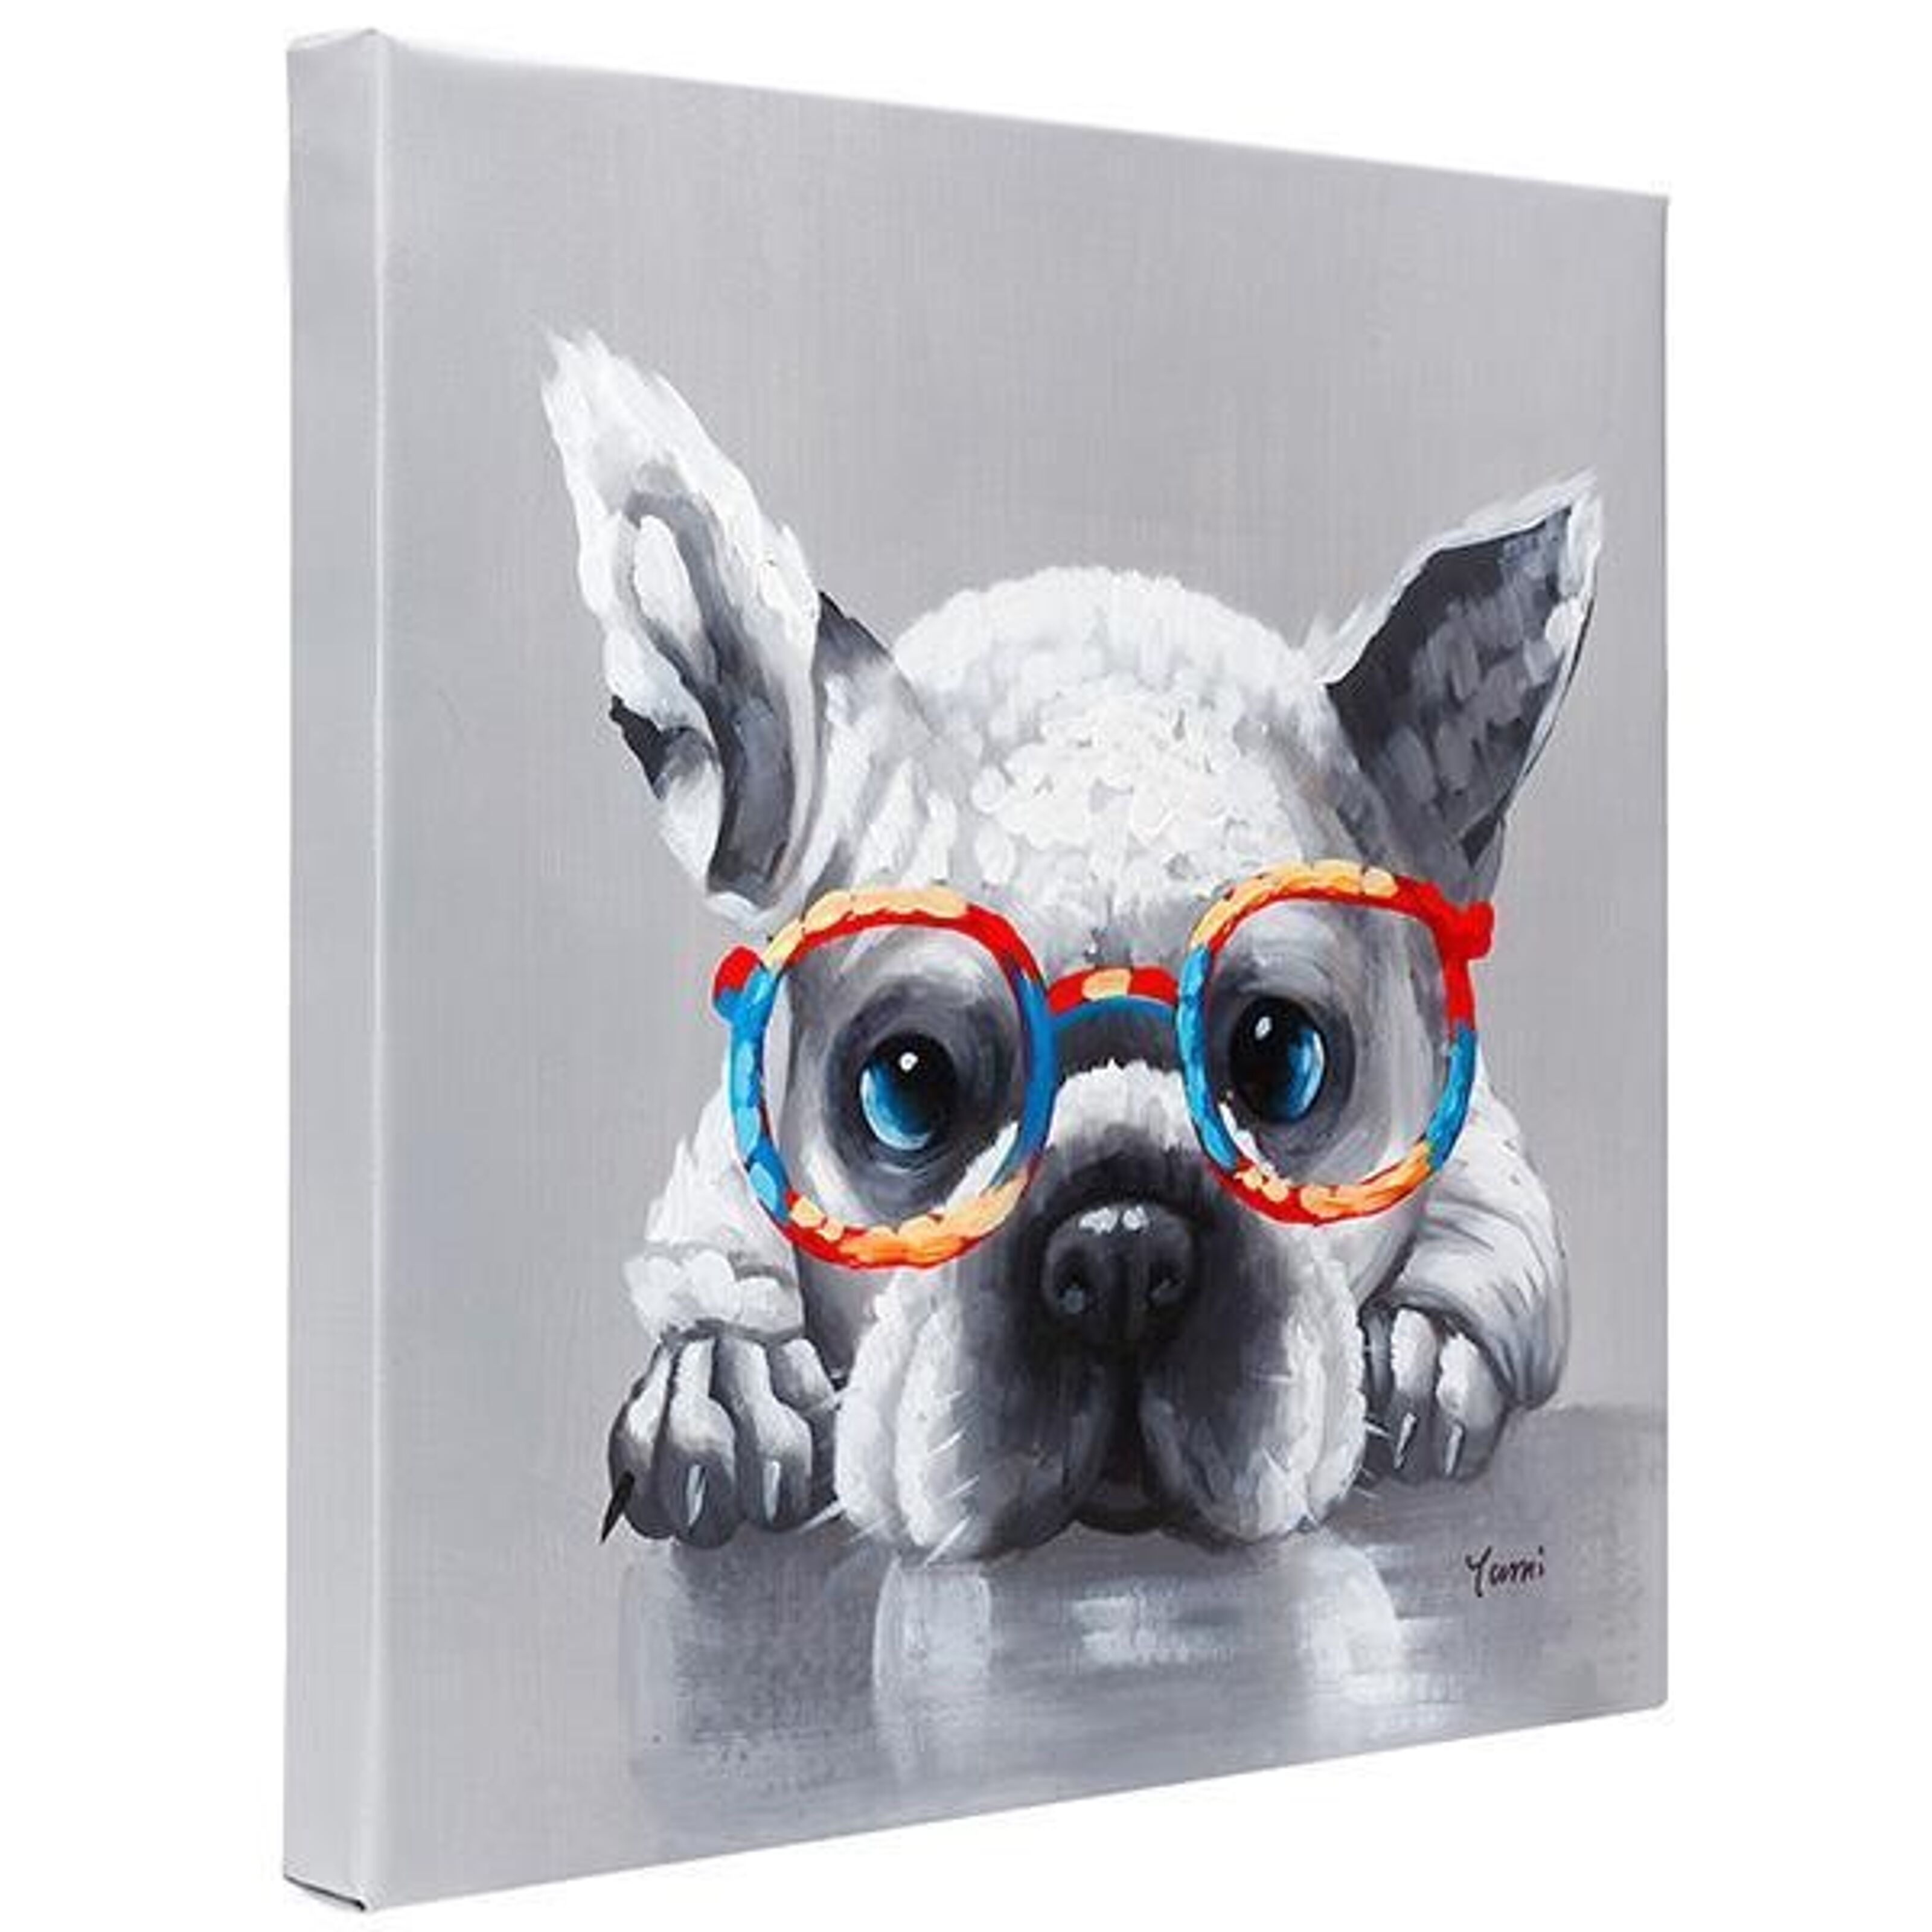 französische bulldogge mit Brille, Designer Deko, Pop-Art - Design